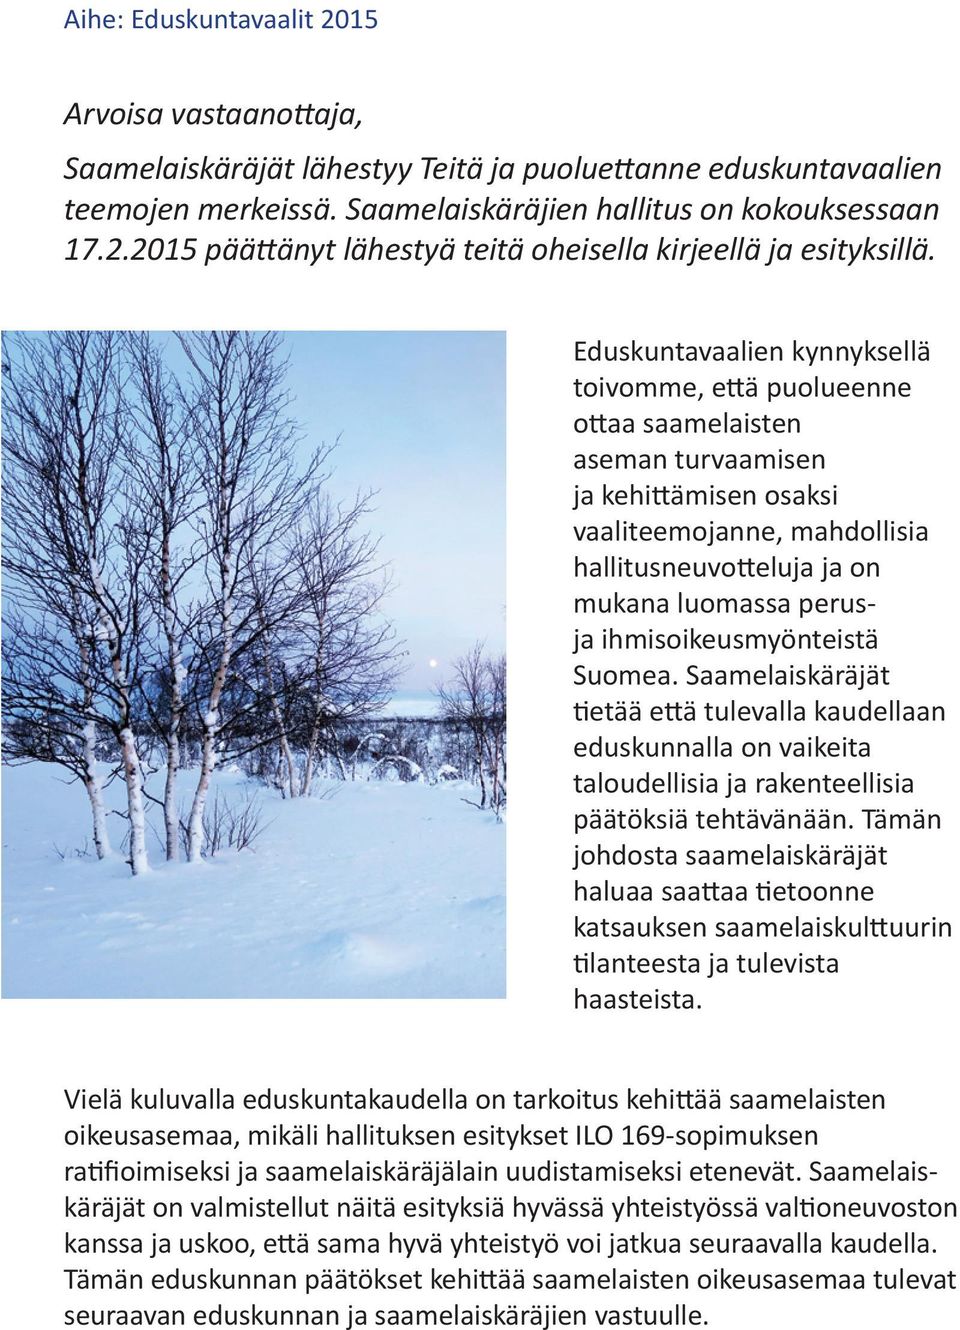 ihmisoikeusmyönteistä Suomea. Saamelaiskäräjät tietää että tulevalla kaudellaan eduskunnalla on vaikeita taloudellisia ja rakenteellisia päätöksiä tehtävänään.